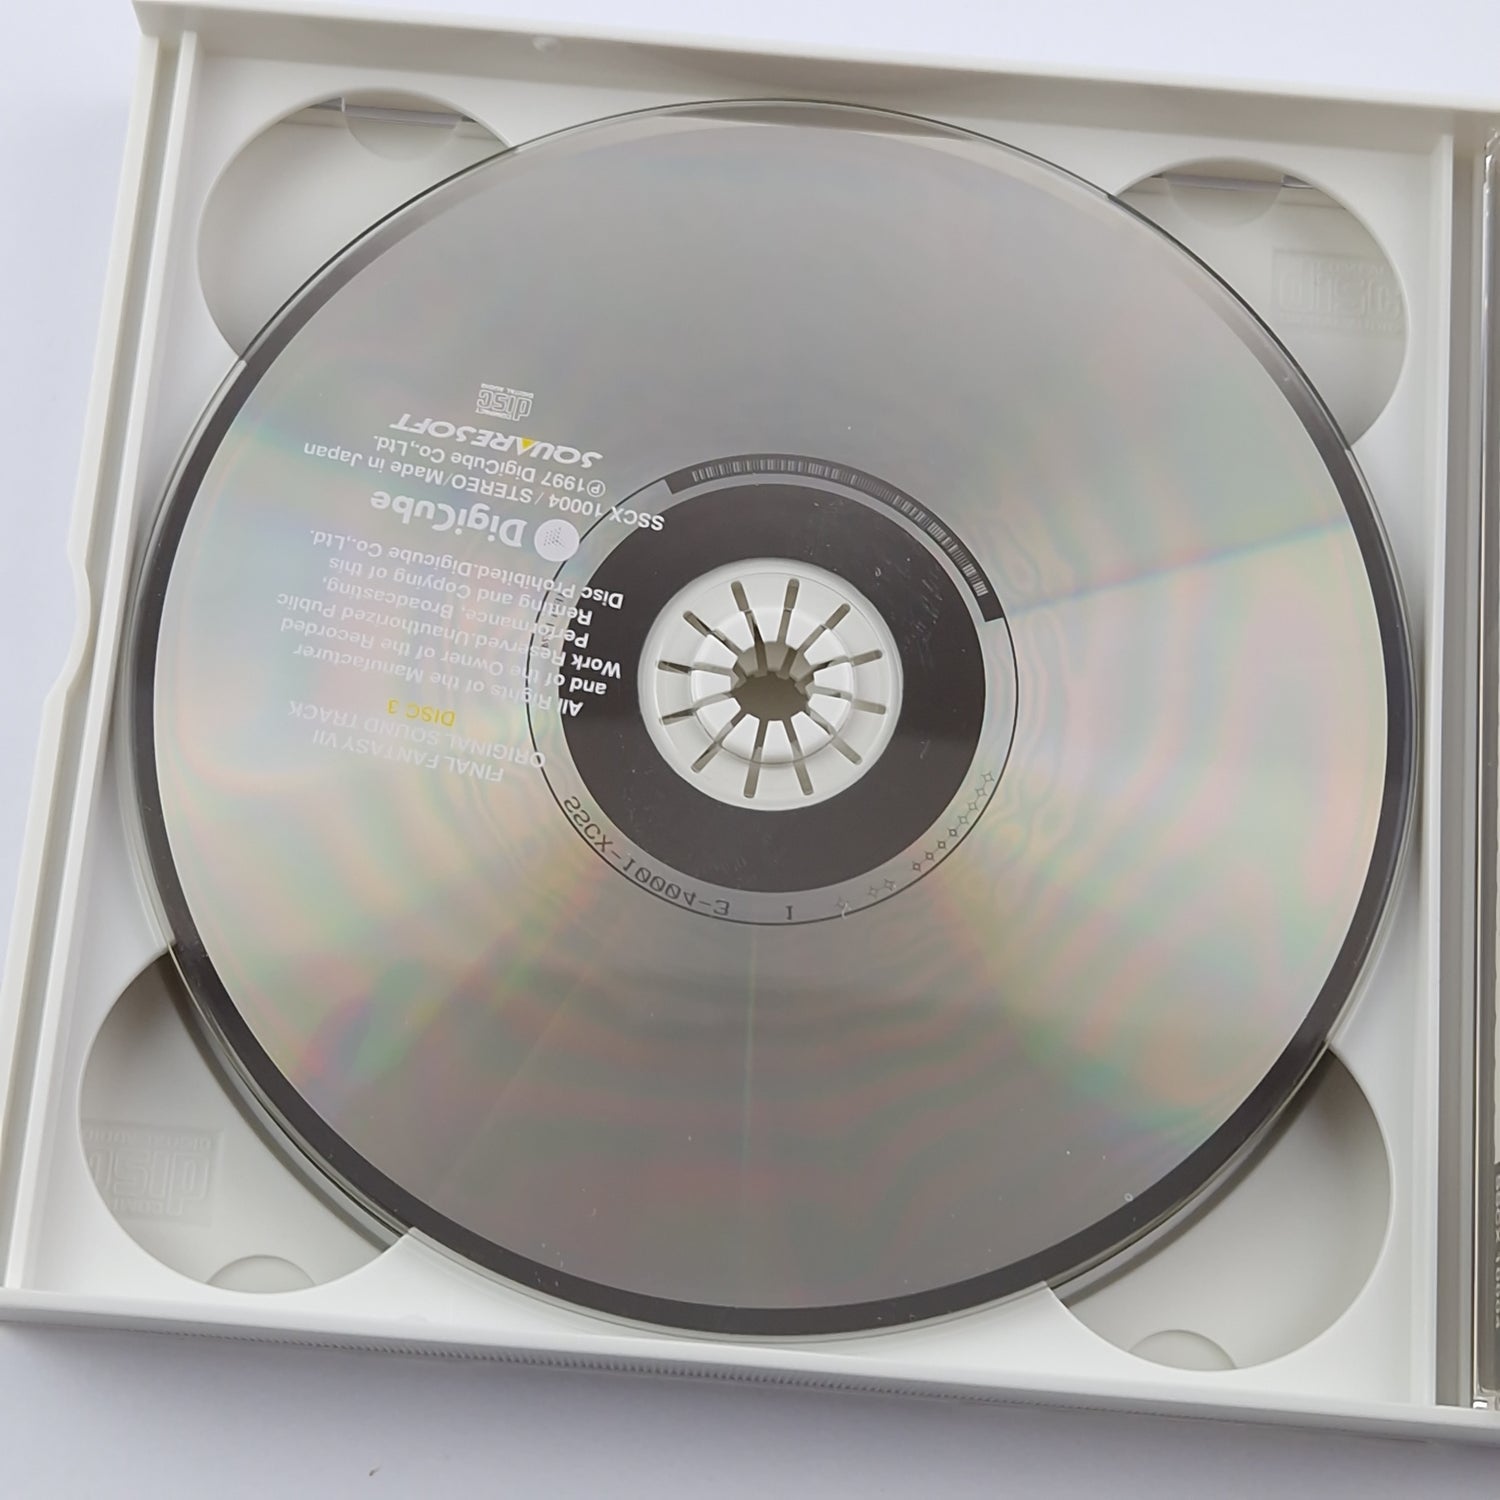 Original Video Game Soundtrack: Final Fantasy VII 7 - Music CD - DigiCube PS1